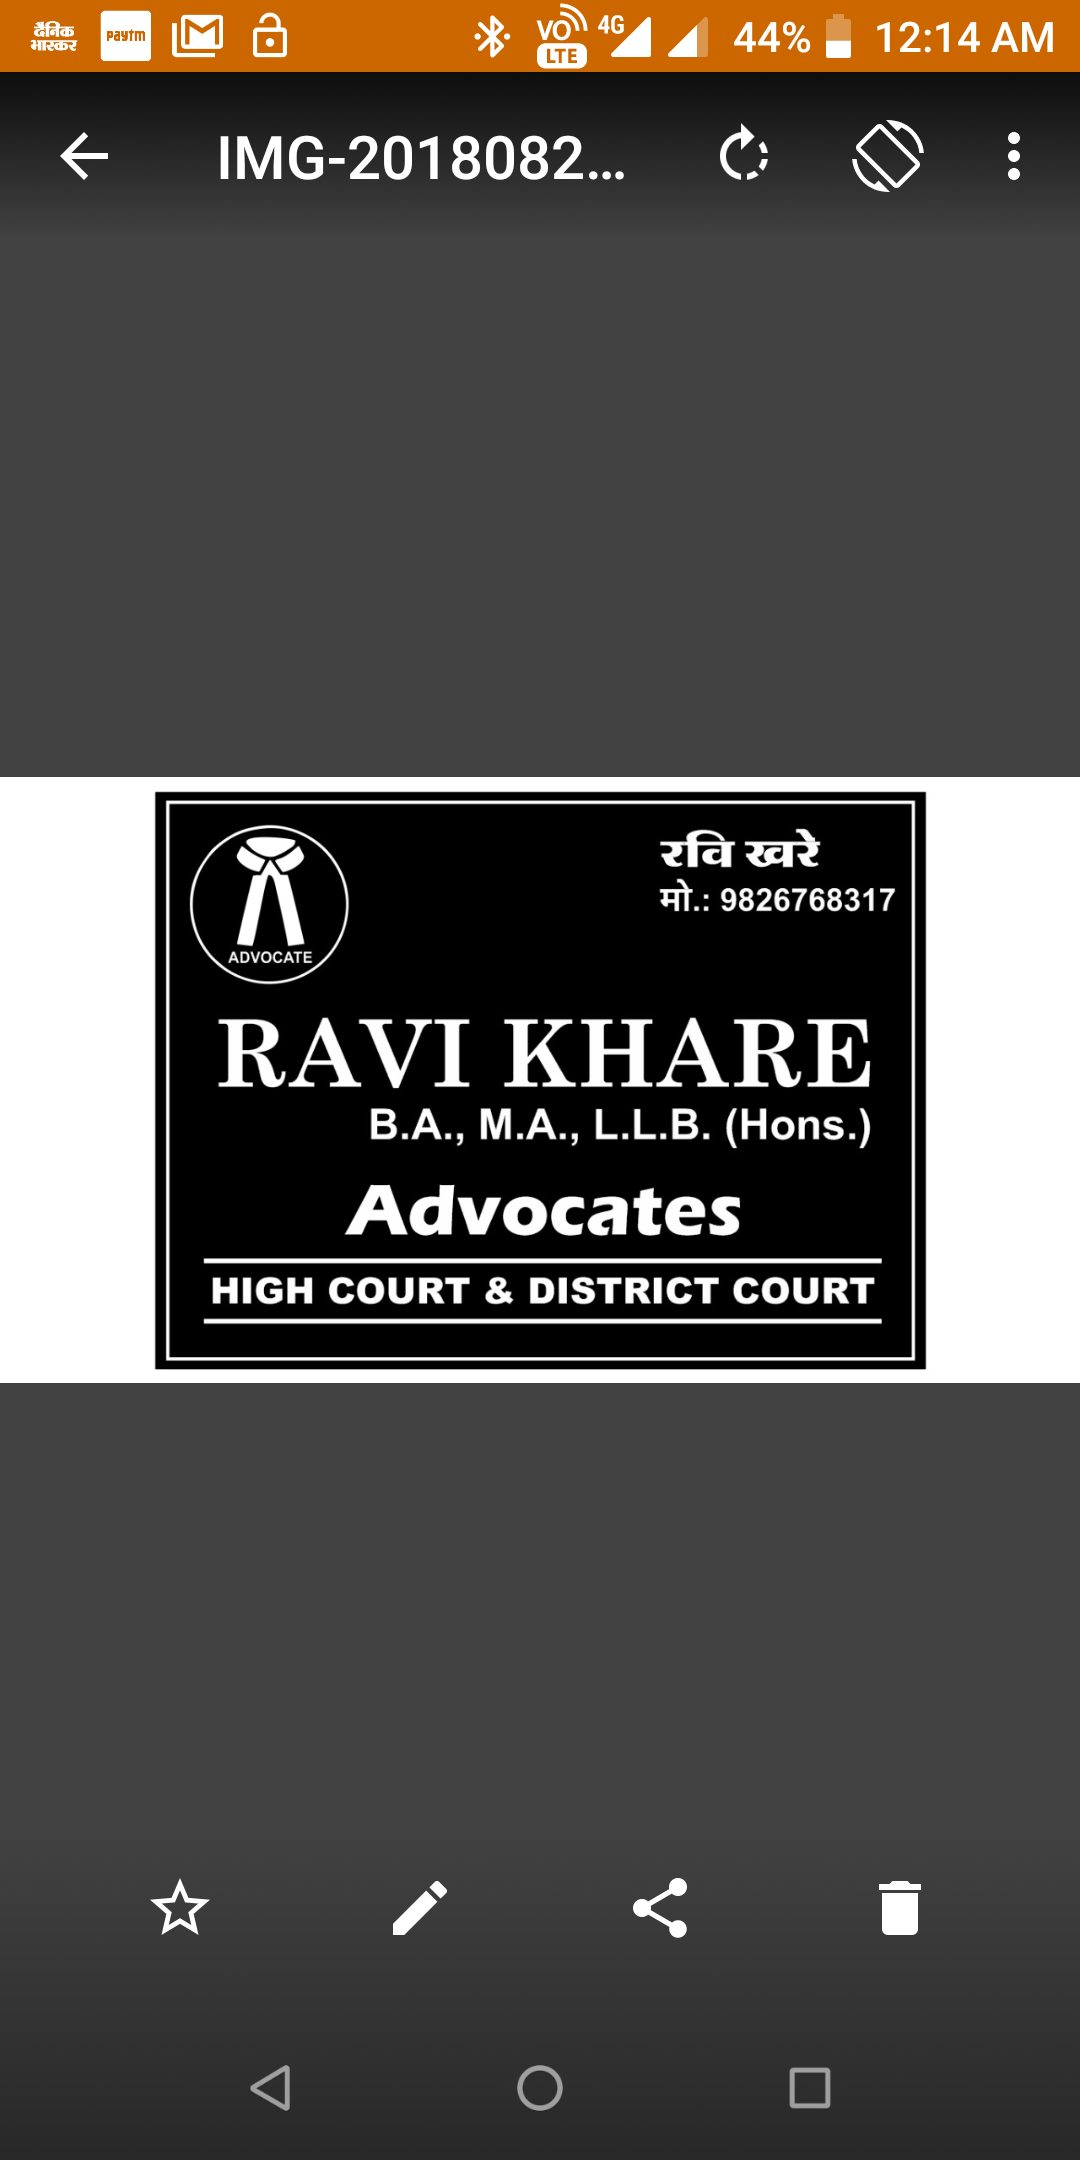 Advocates Ravi Khare